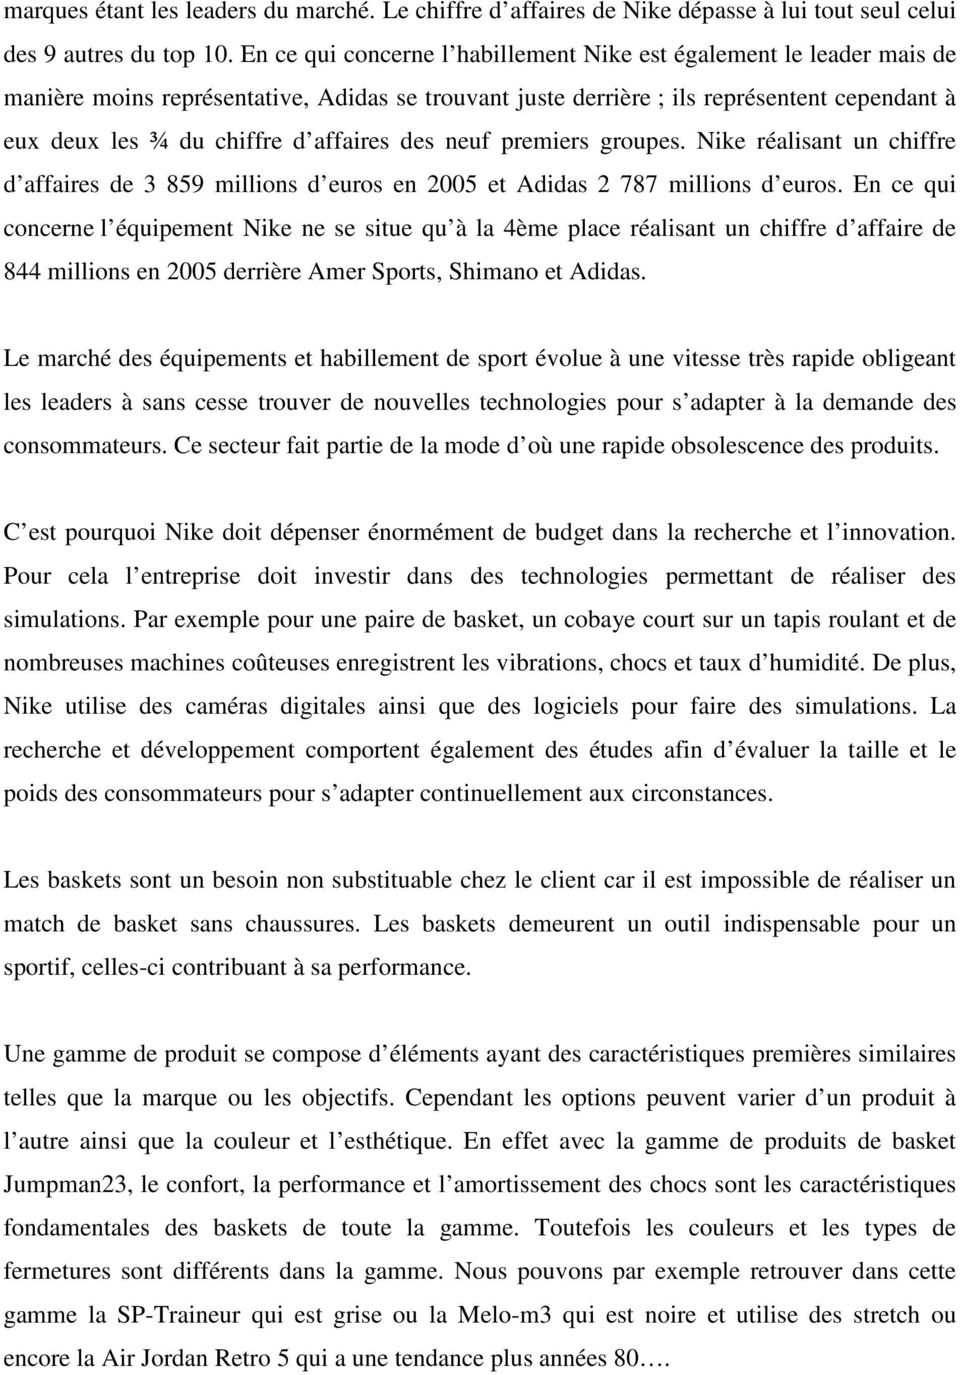 LA POLITIQUE DE PRODUIT : NIKE - PDF Téléchargement Gratuit